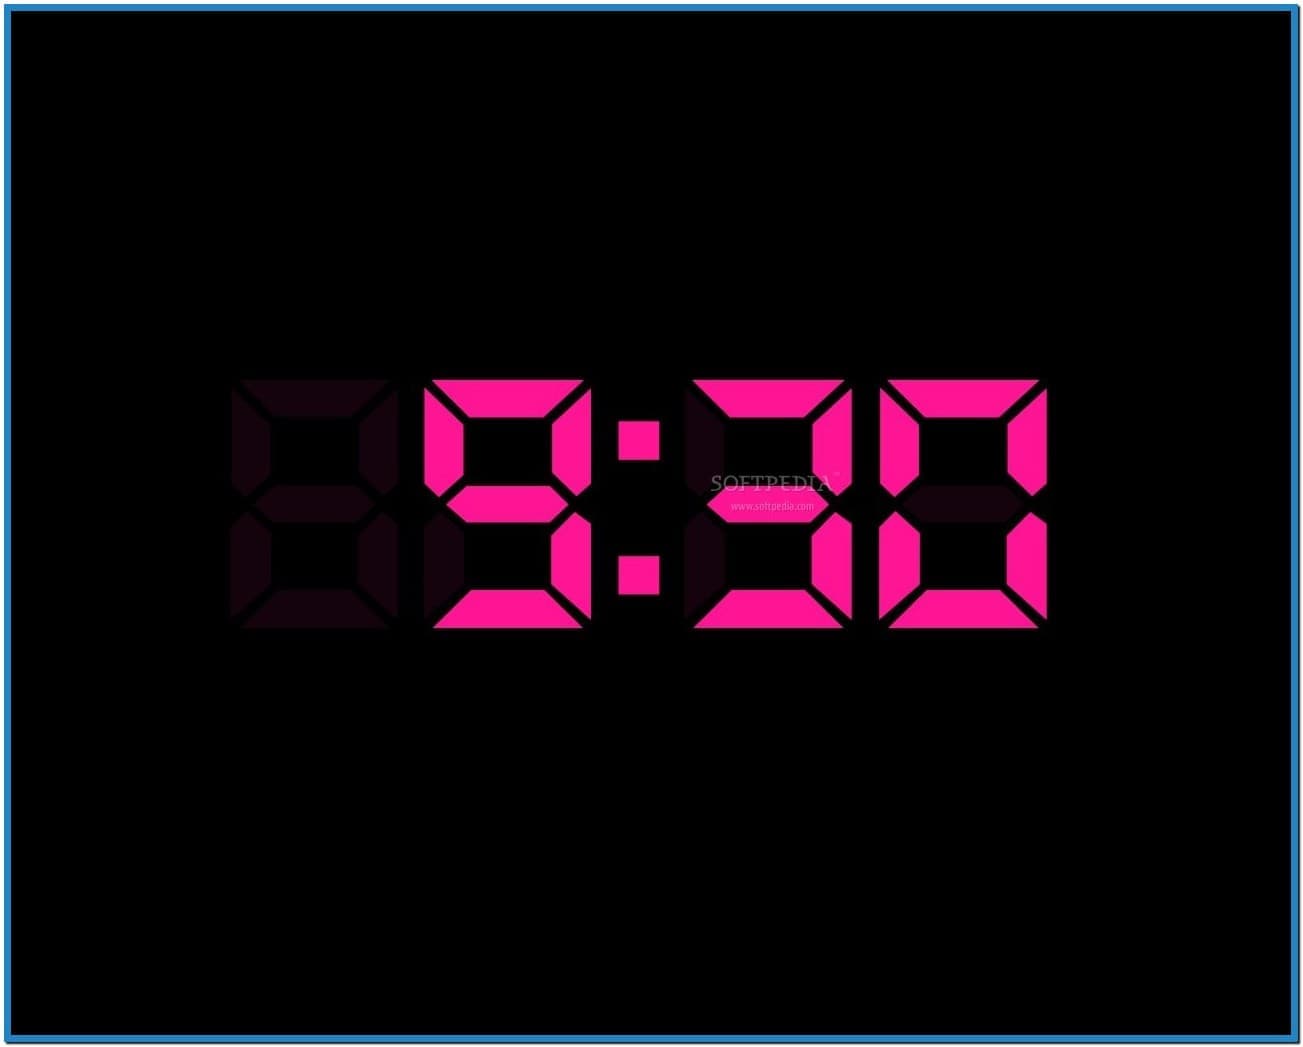 Digital clock screensaver for desktop   Download free